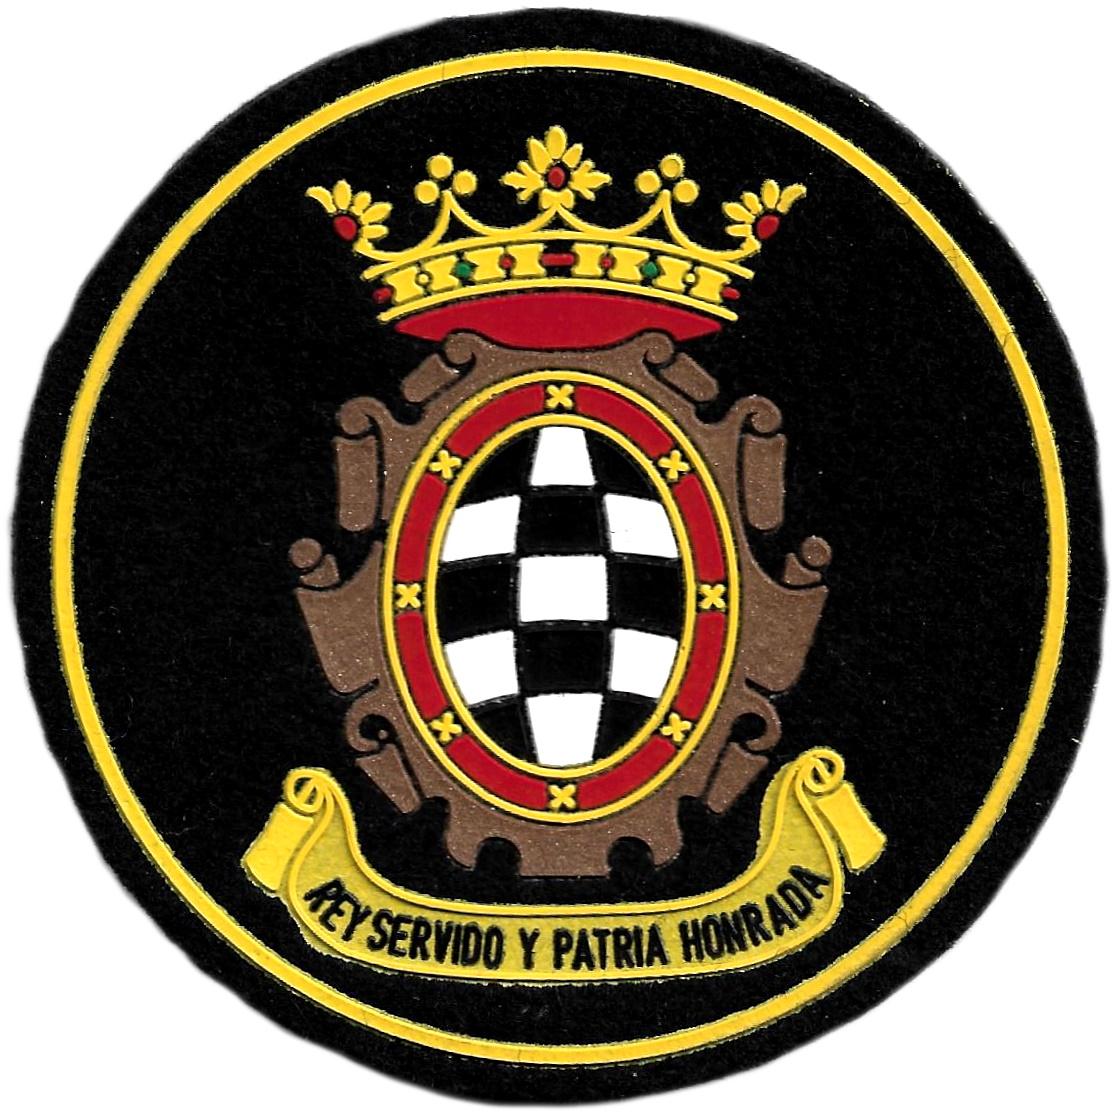 Armada Española Fragata Álvaro de Bazán Rey servido y patria honrada parche insignia emblema del ejército